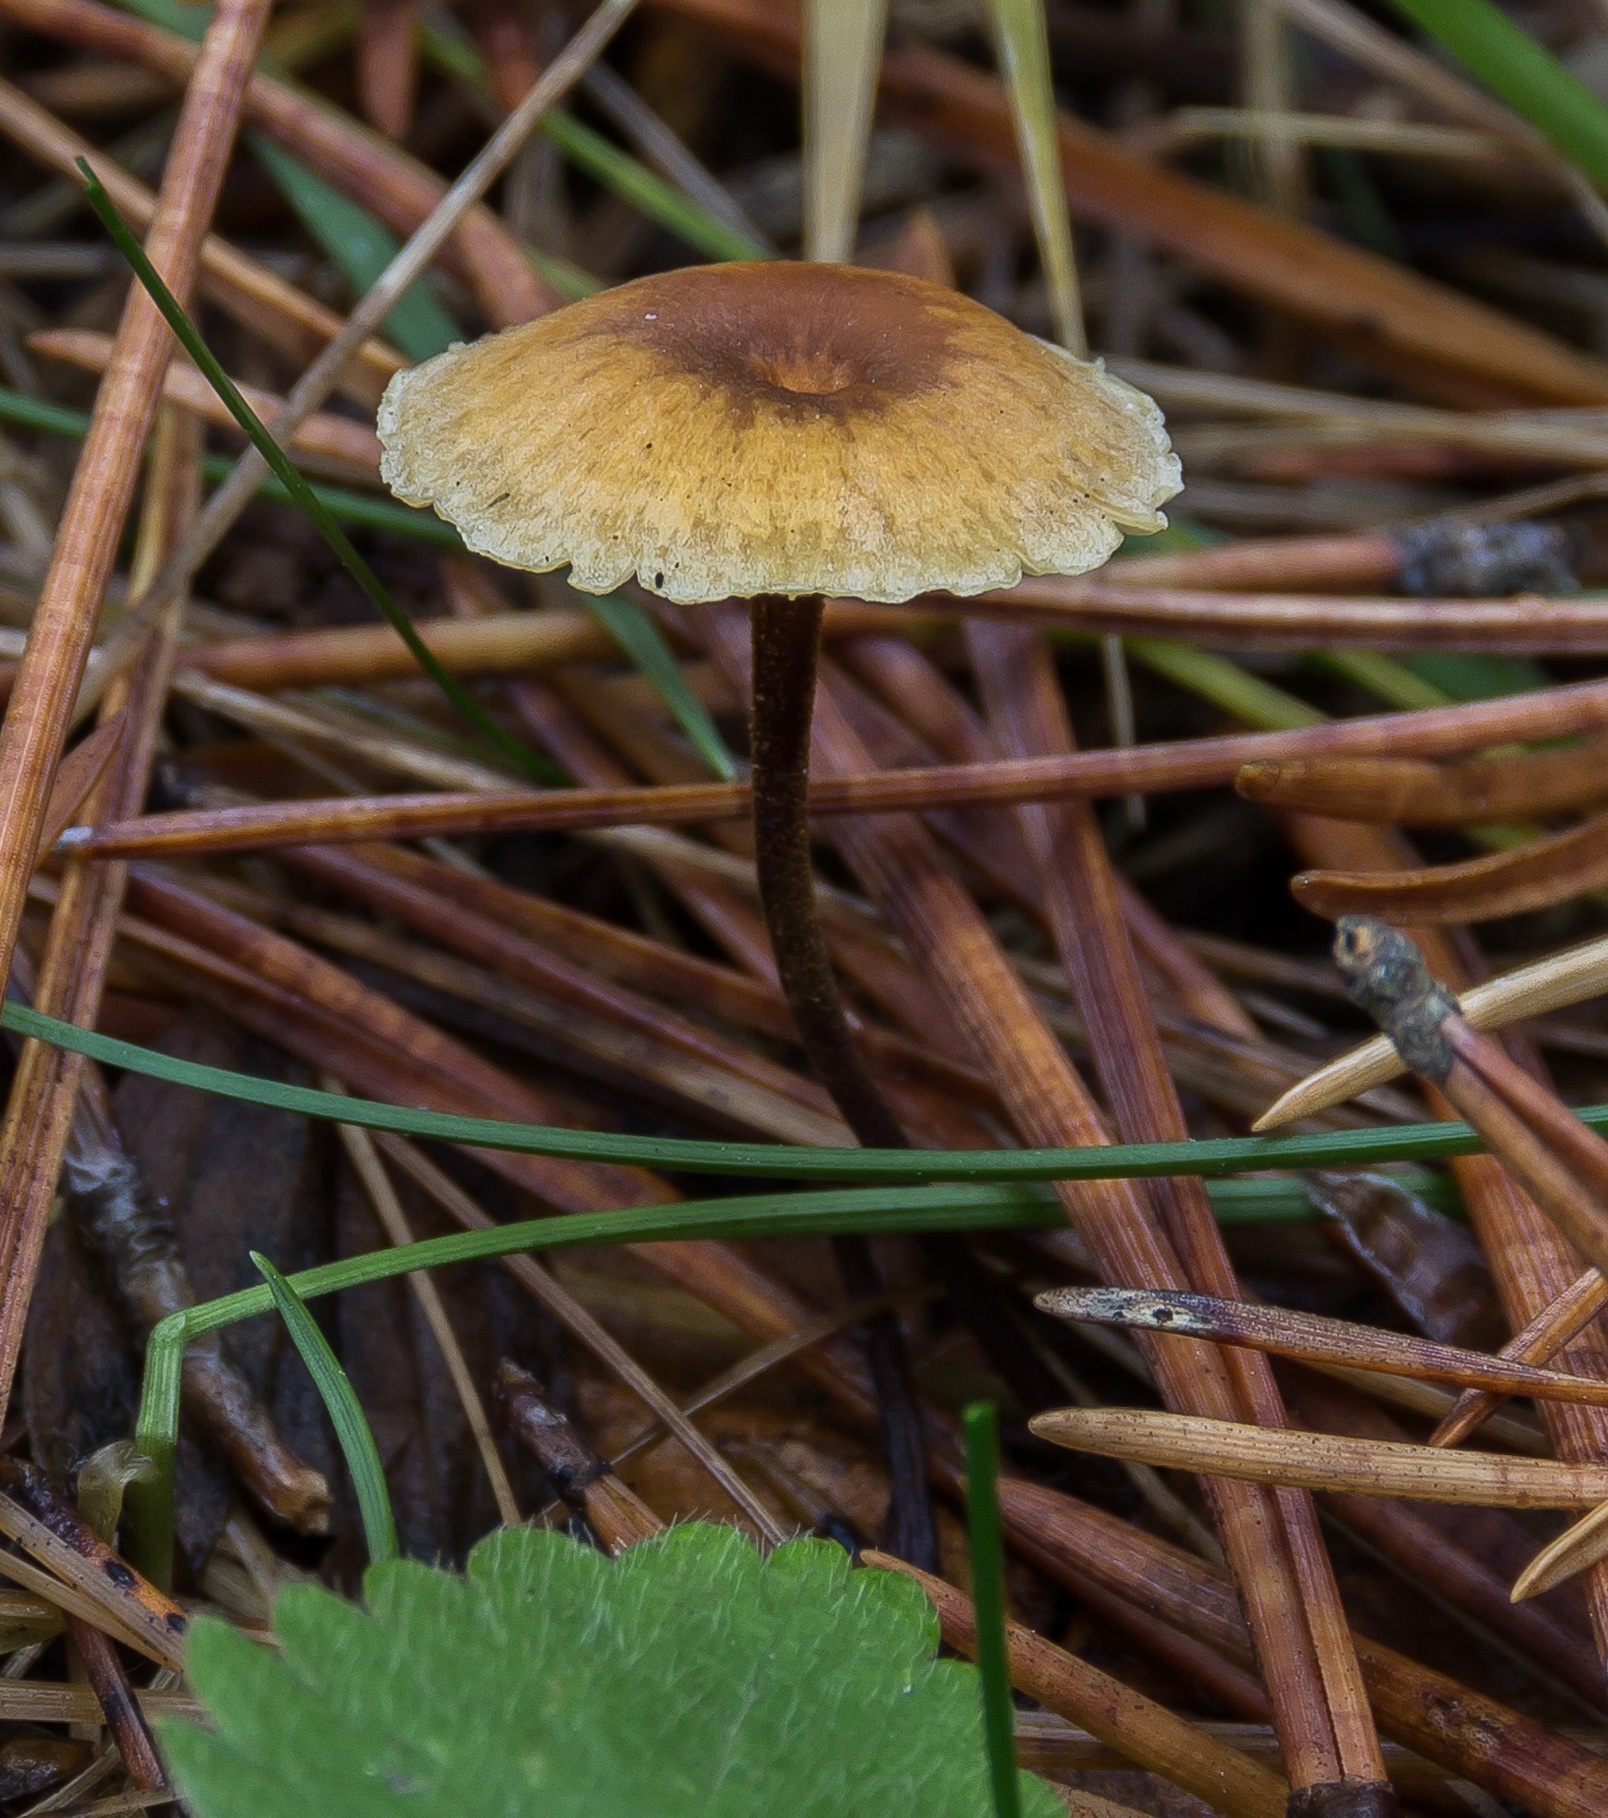 Ксеромфалина стеблевидная (xeromphalina cauticinalis) – грибы сибири